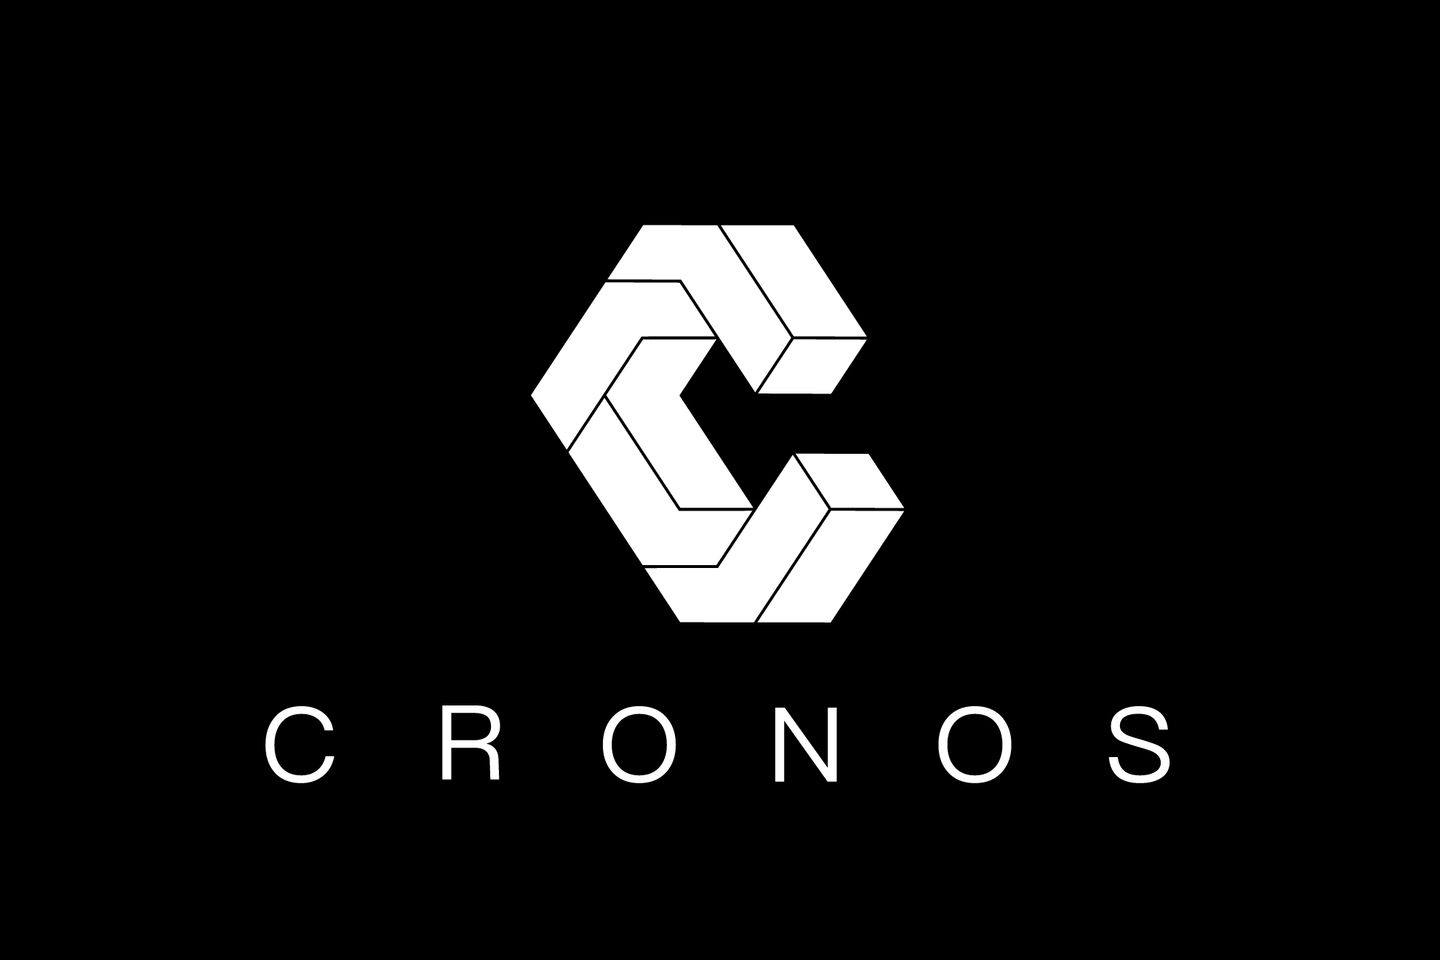 Cronos 急成長中フィットネスアパレルベンチャーの販売スタッフ求む